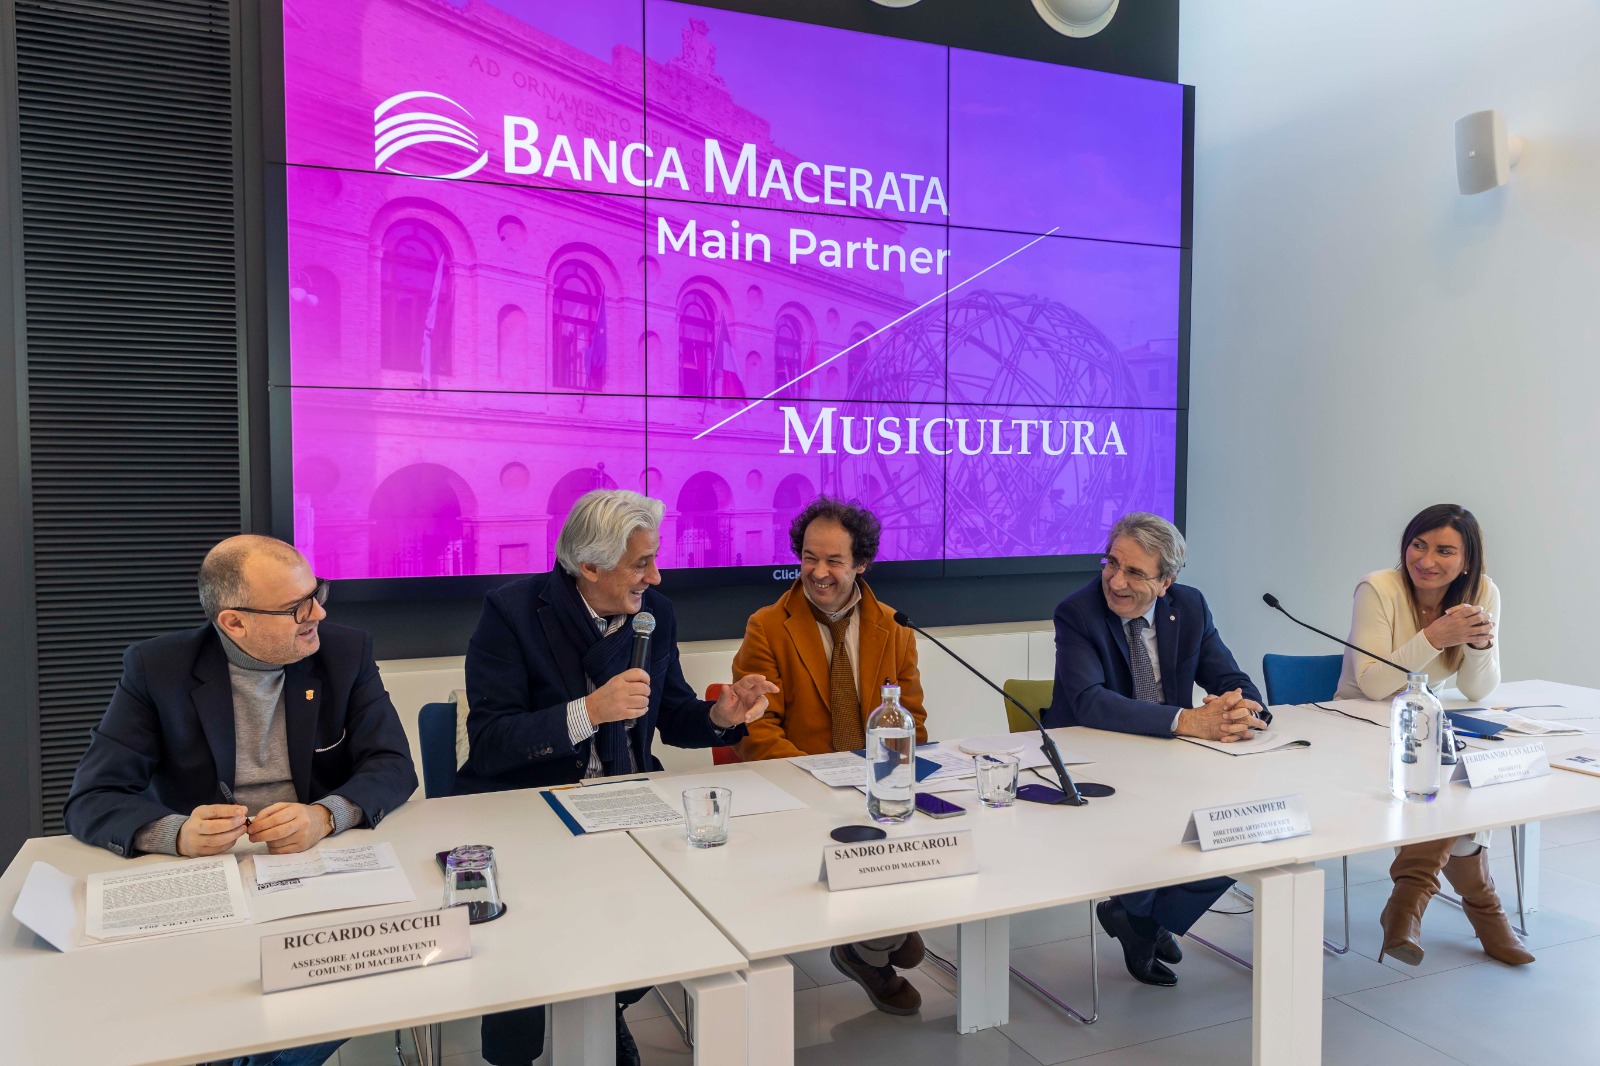 Banca Macerata si conferma main partner di Musicultura per il prossimo triennio | Banca Macerata 2